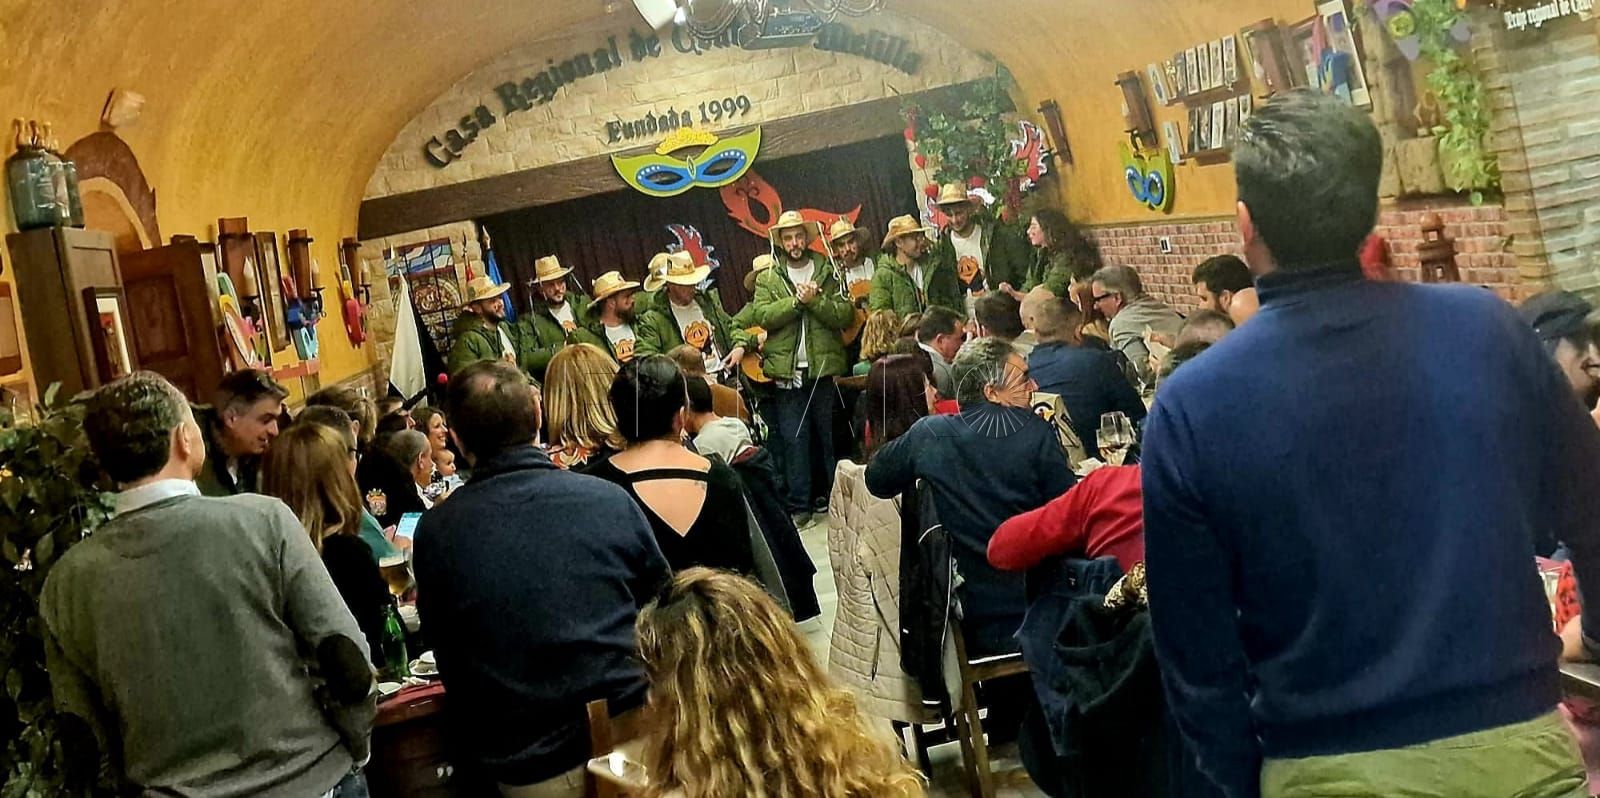 La Casa regional de Ceuta en Melilla vive el carnaval por todo lo alto